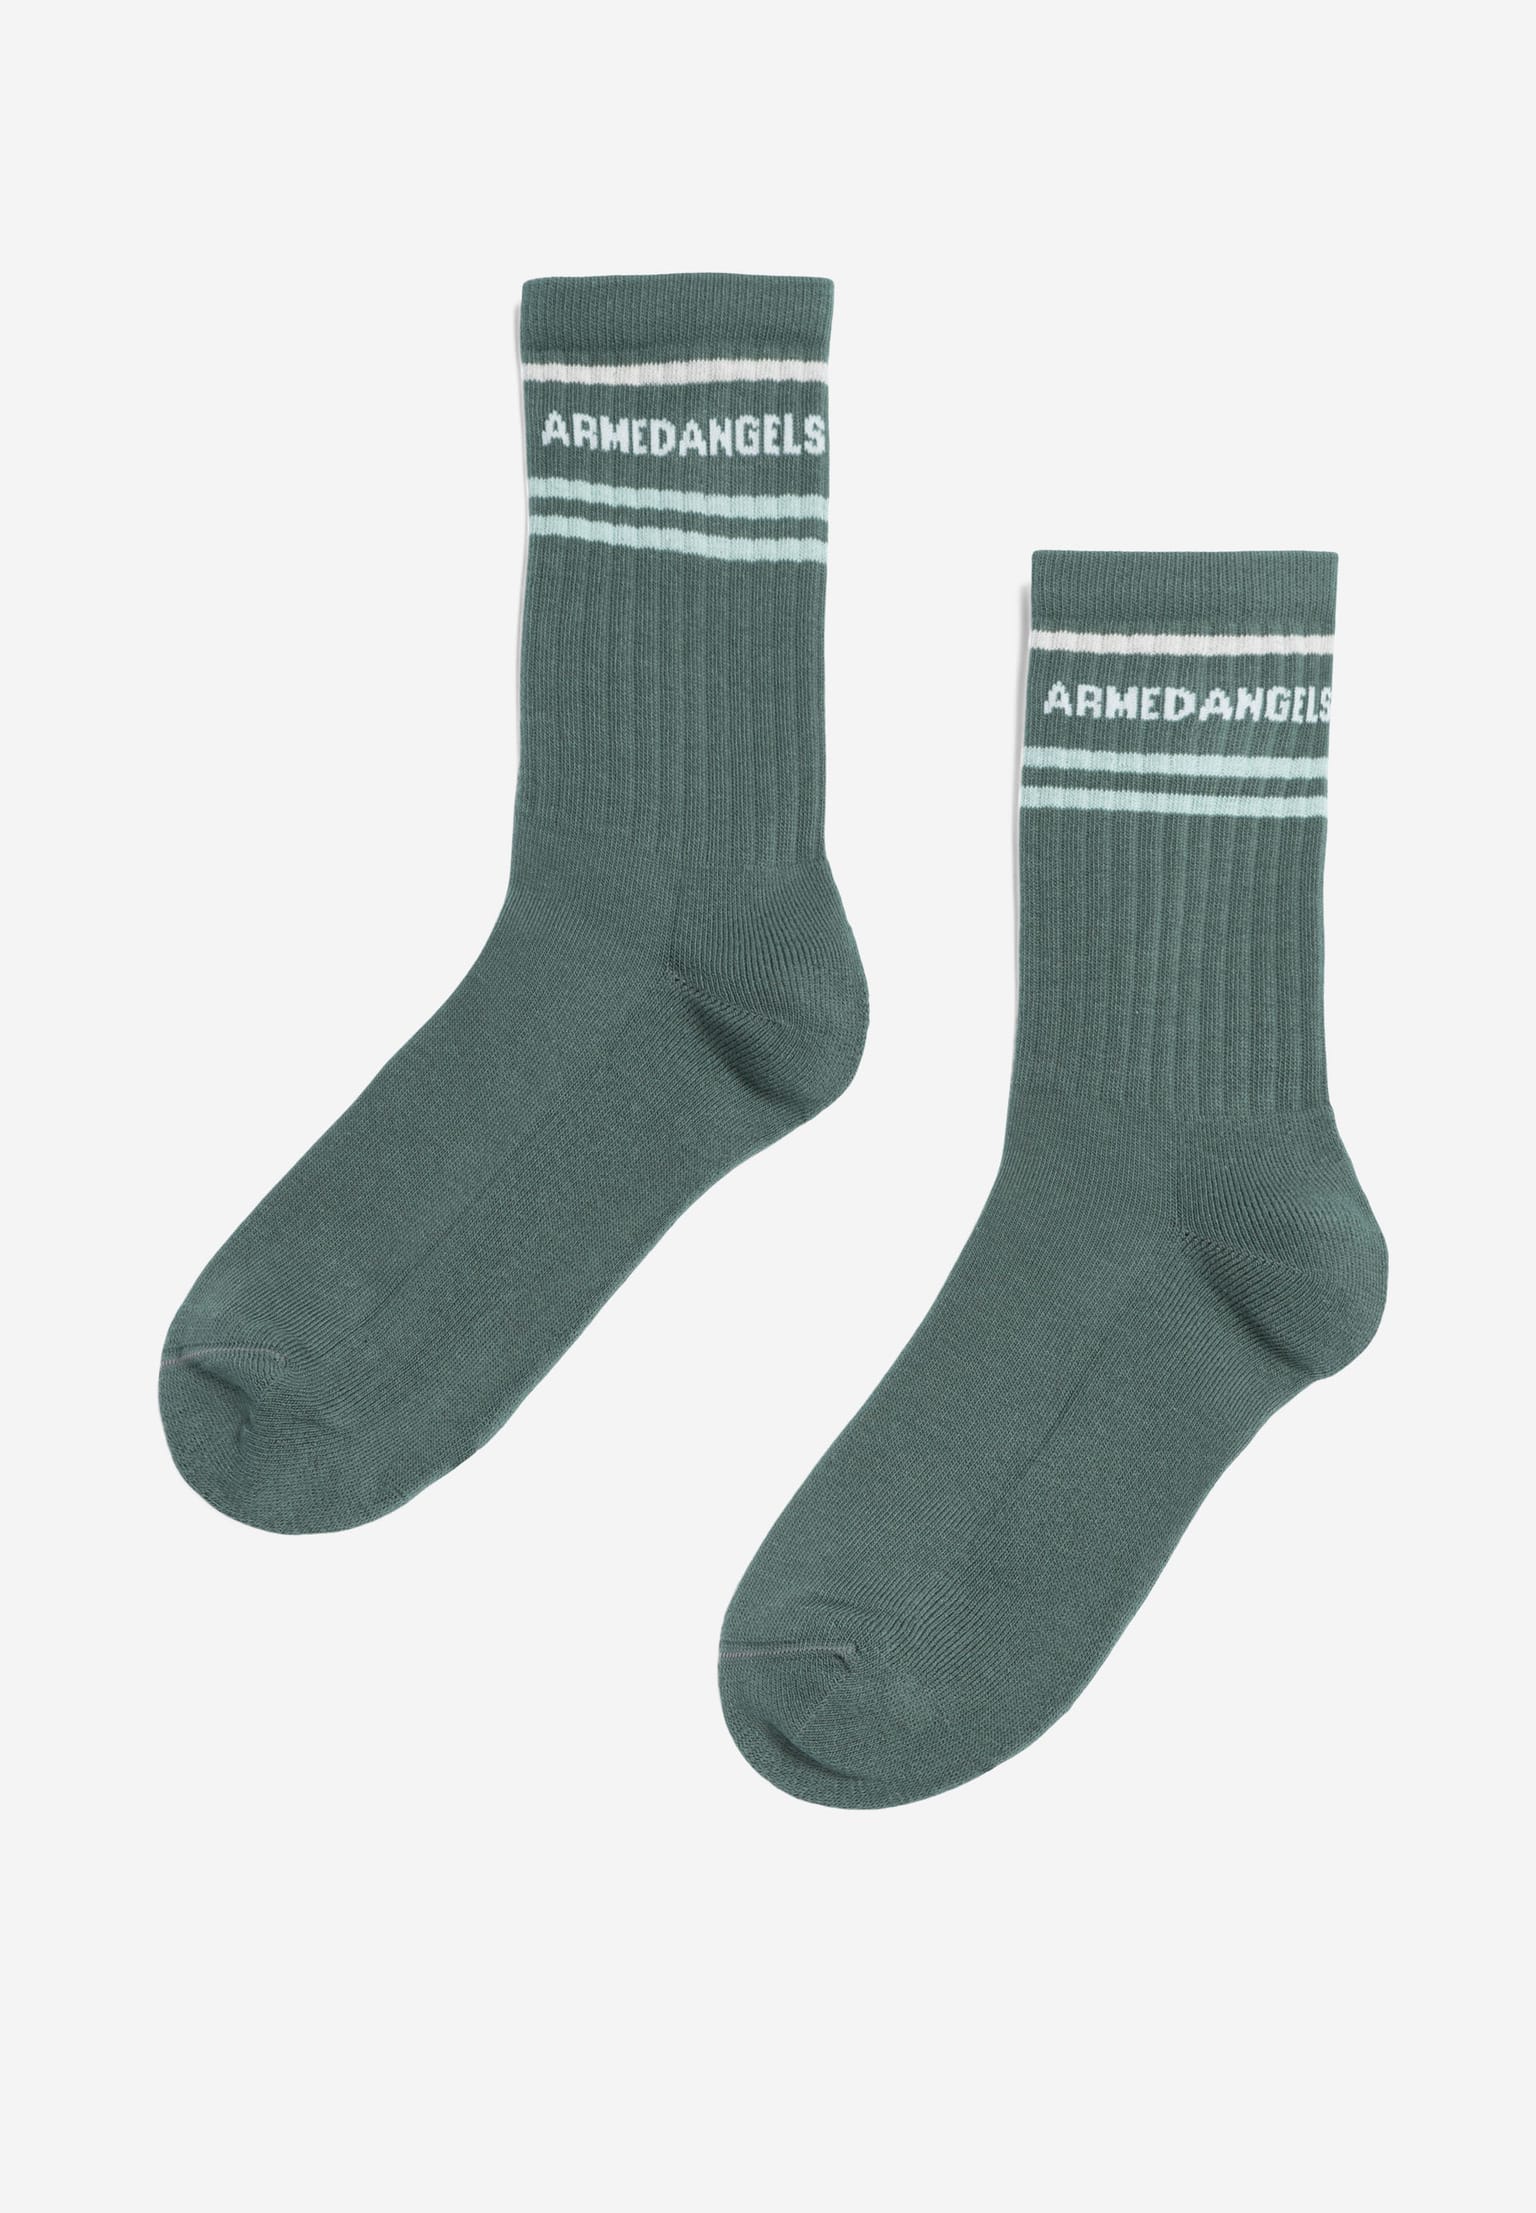 ARMEDANGELS Saamus Armedangels Socken green spruce 43-46